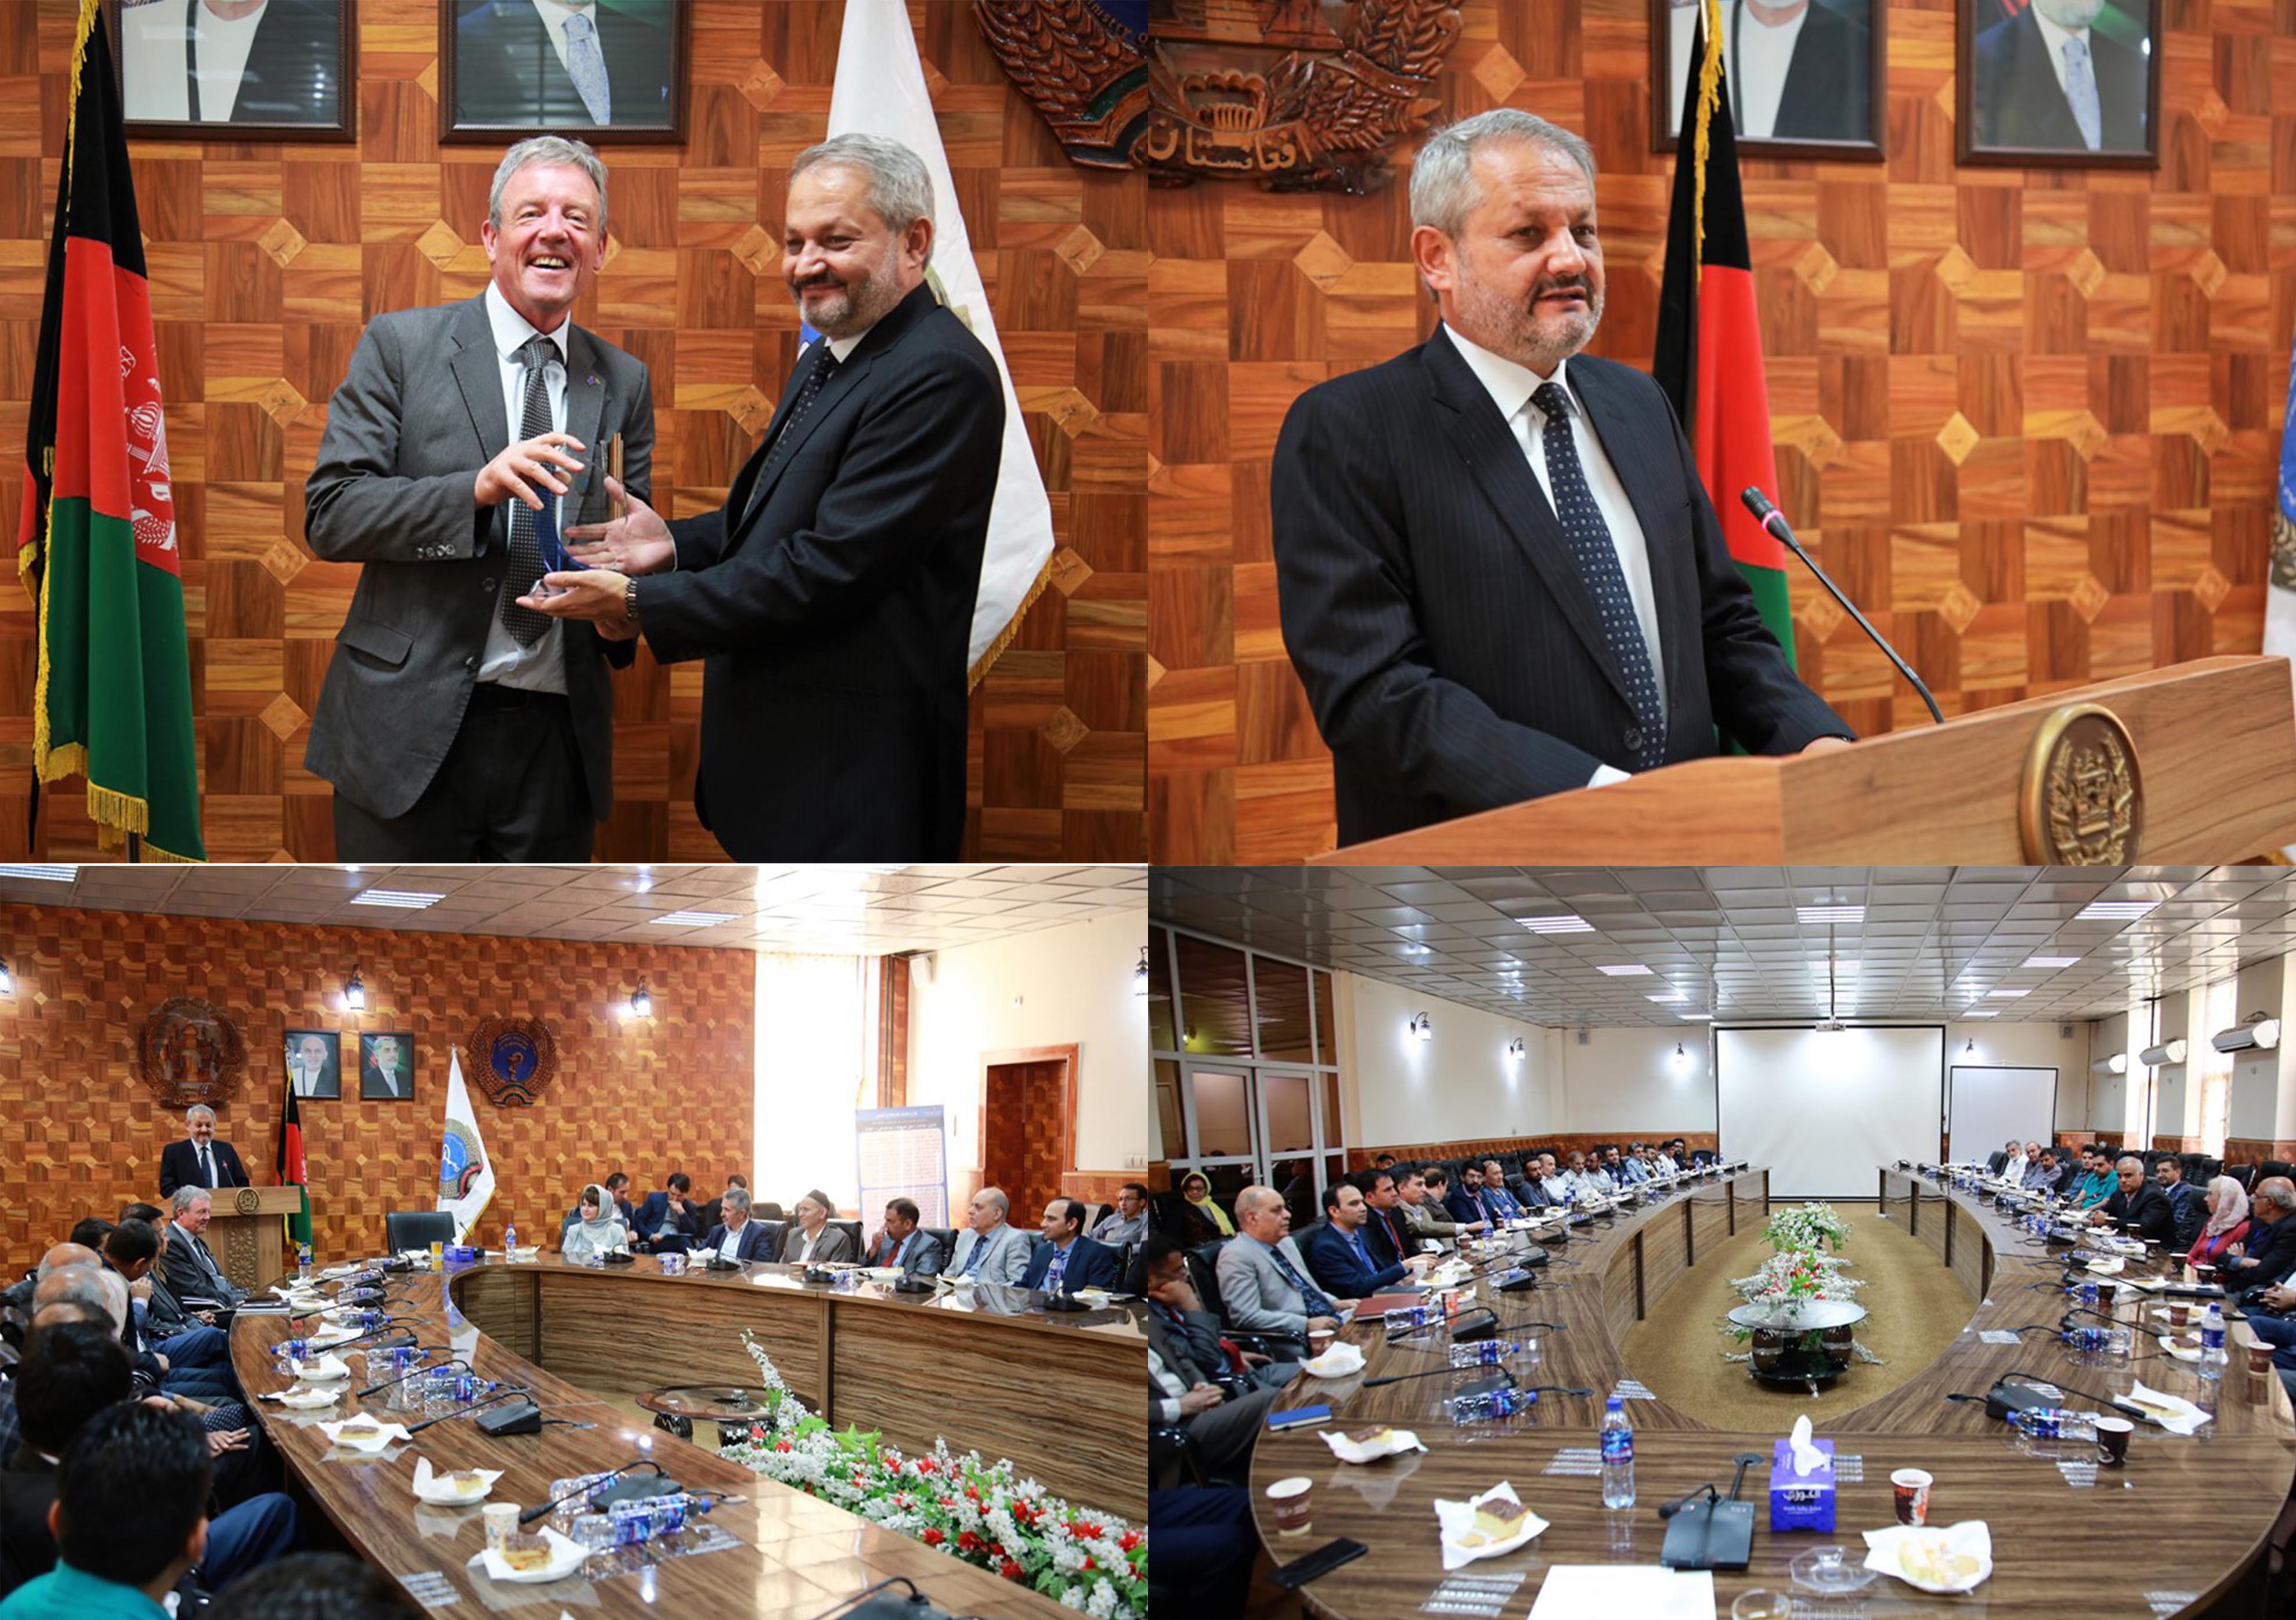 ماموریت داکتر نیکلاس تیلور مسوول تیم خدمات اساسی اتحادیه اروپا در افغانستان پایان یافت